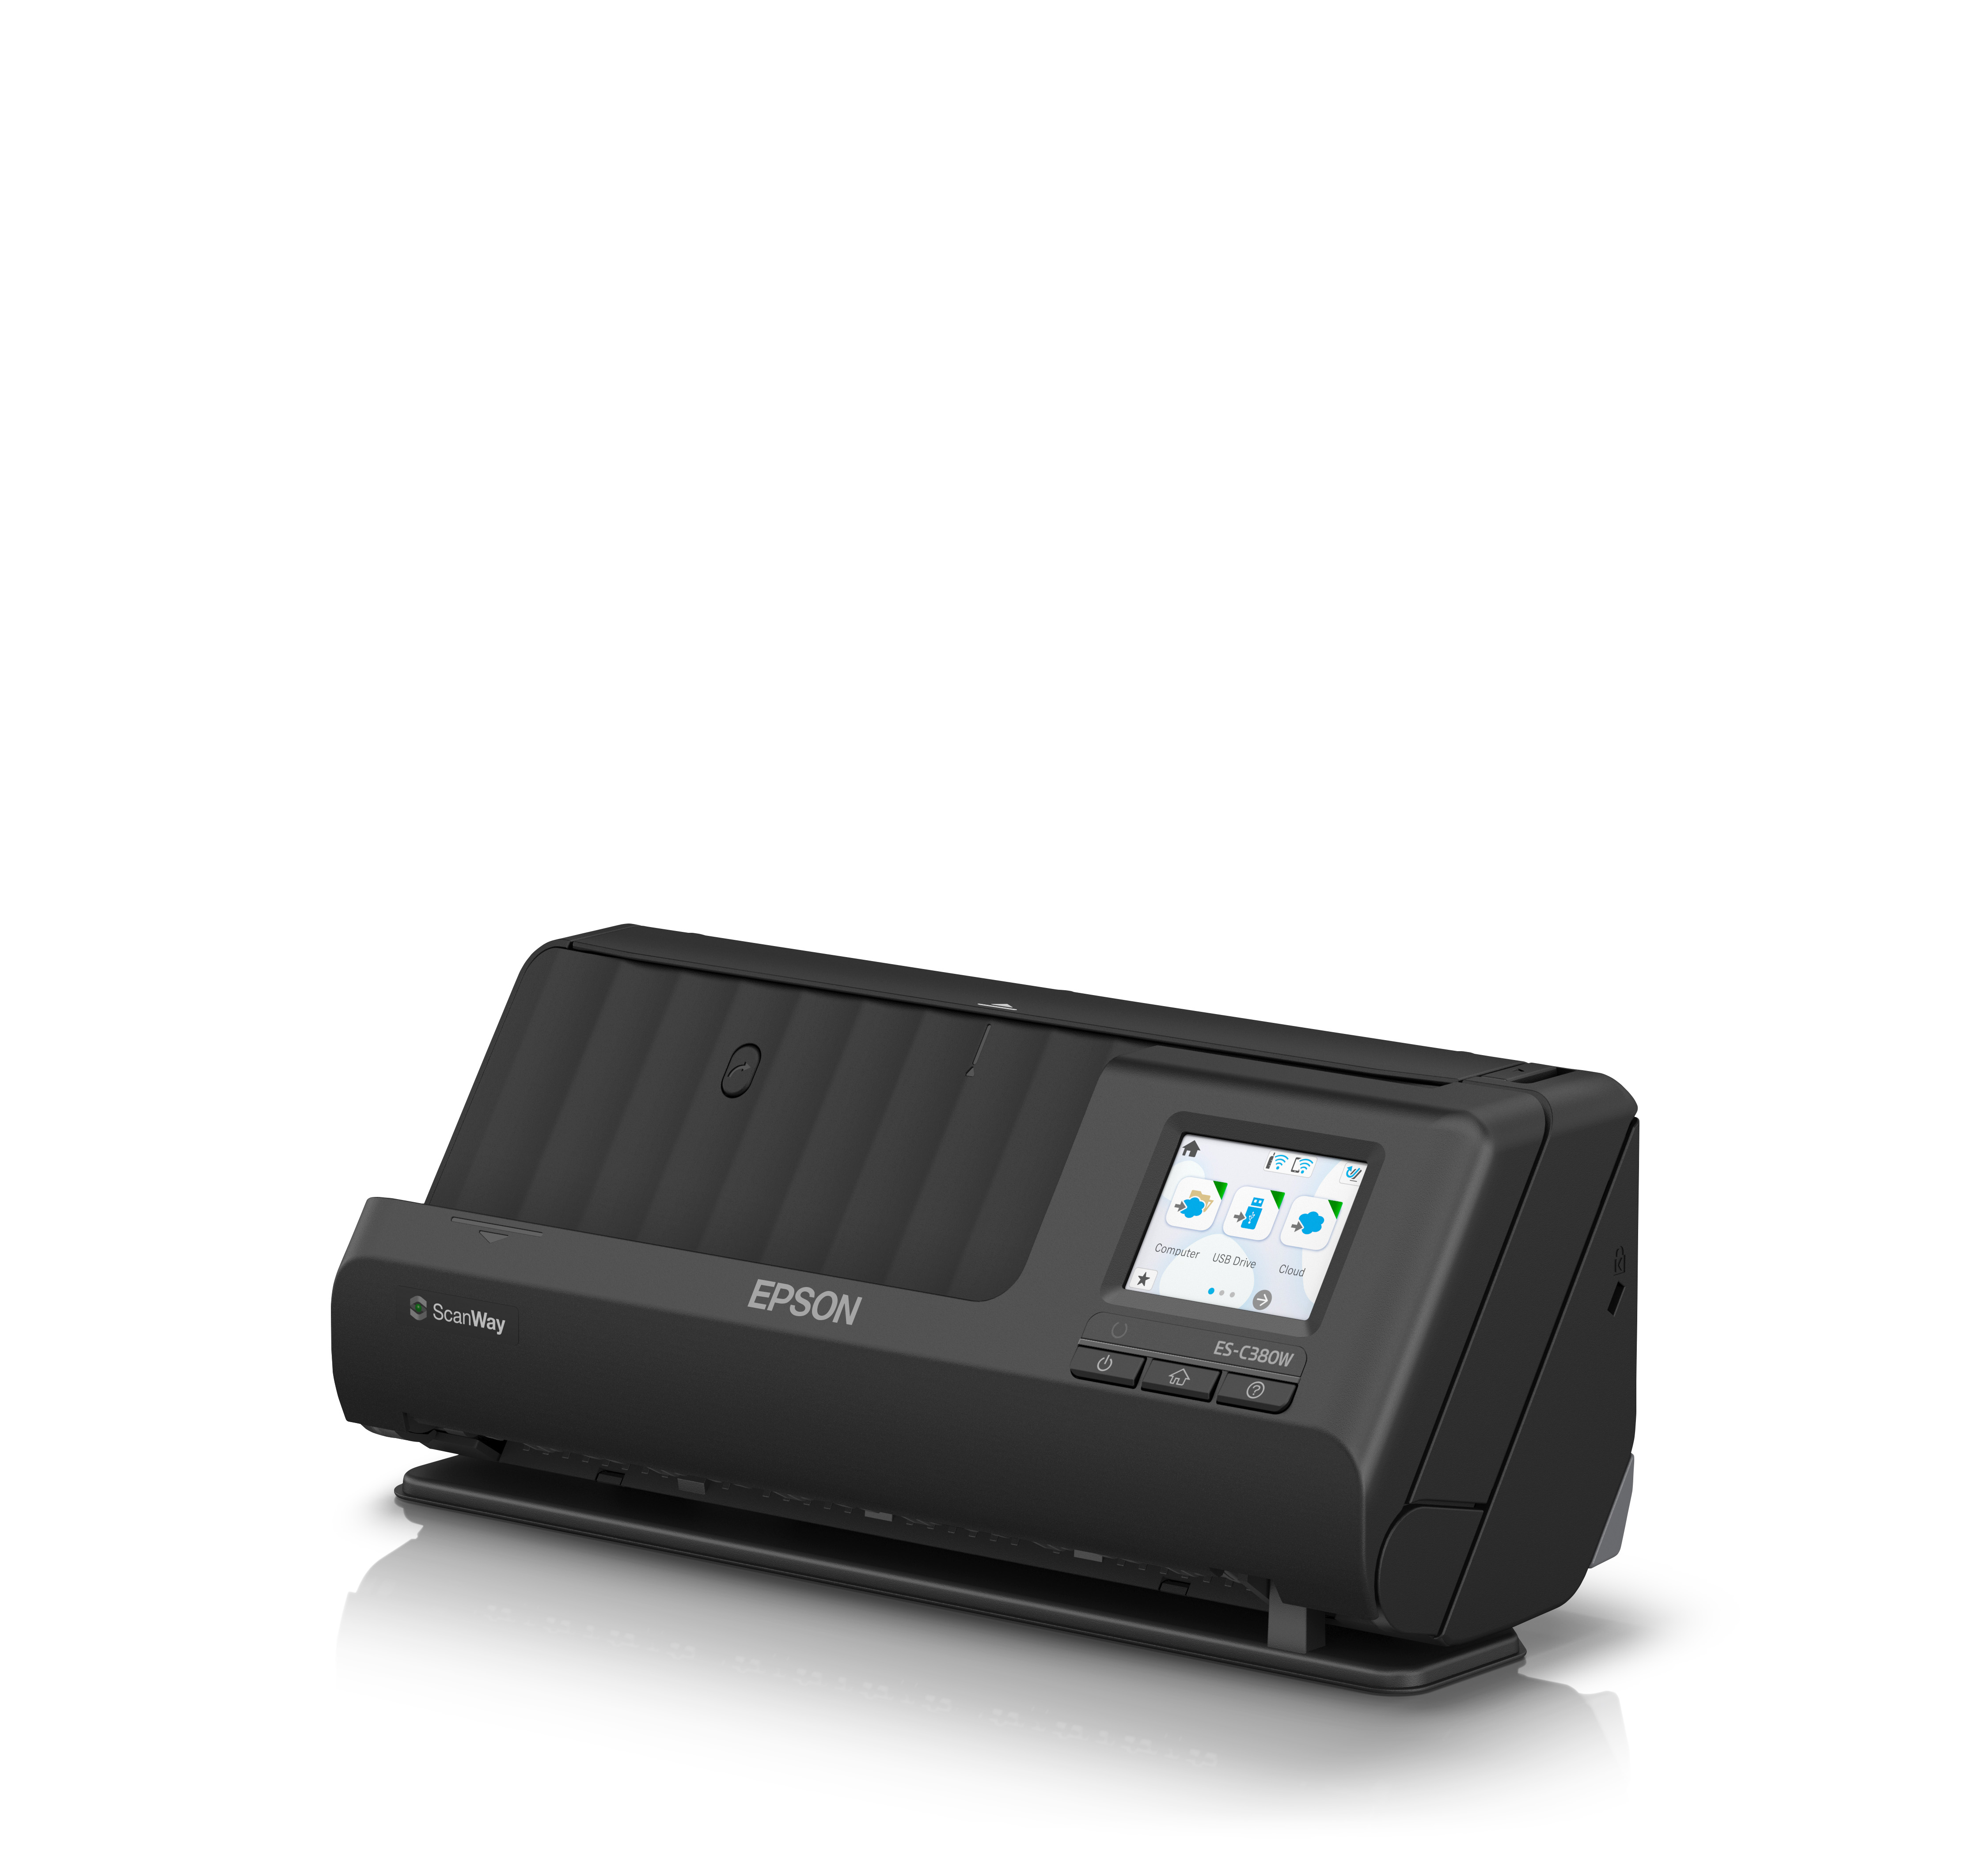 Epson ES-C380W - Einzelblatt-Scanner - Duplex - A4/Legal - 600 dpi x 600 dpi - automatischer Dokumenteneinzug (20 Seiten)